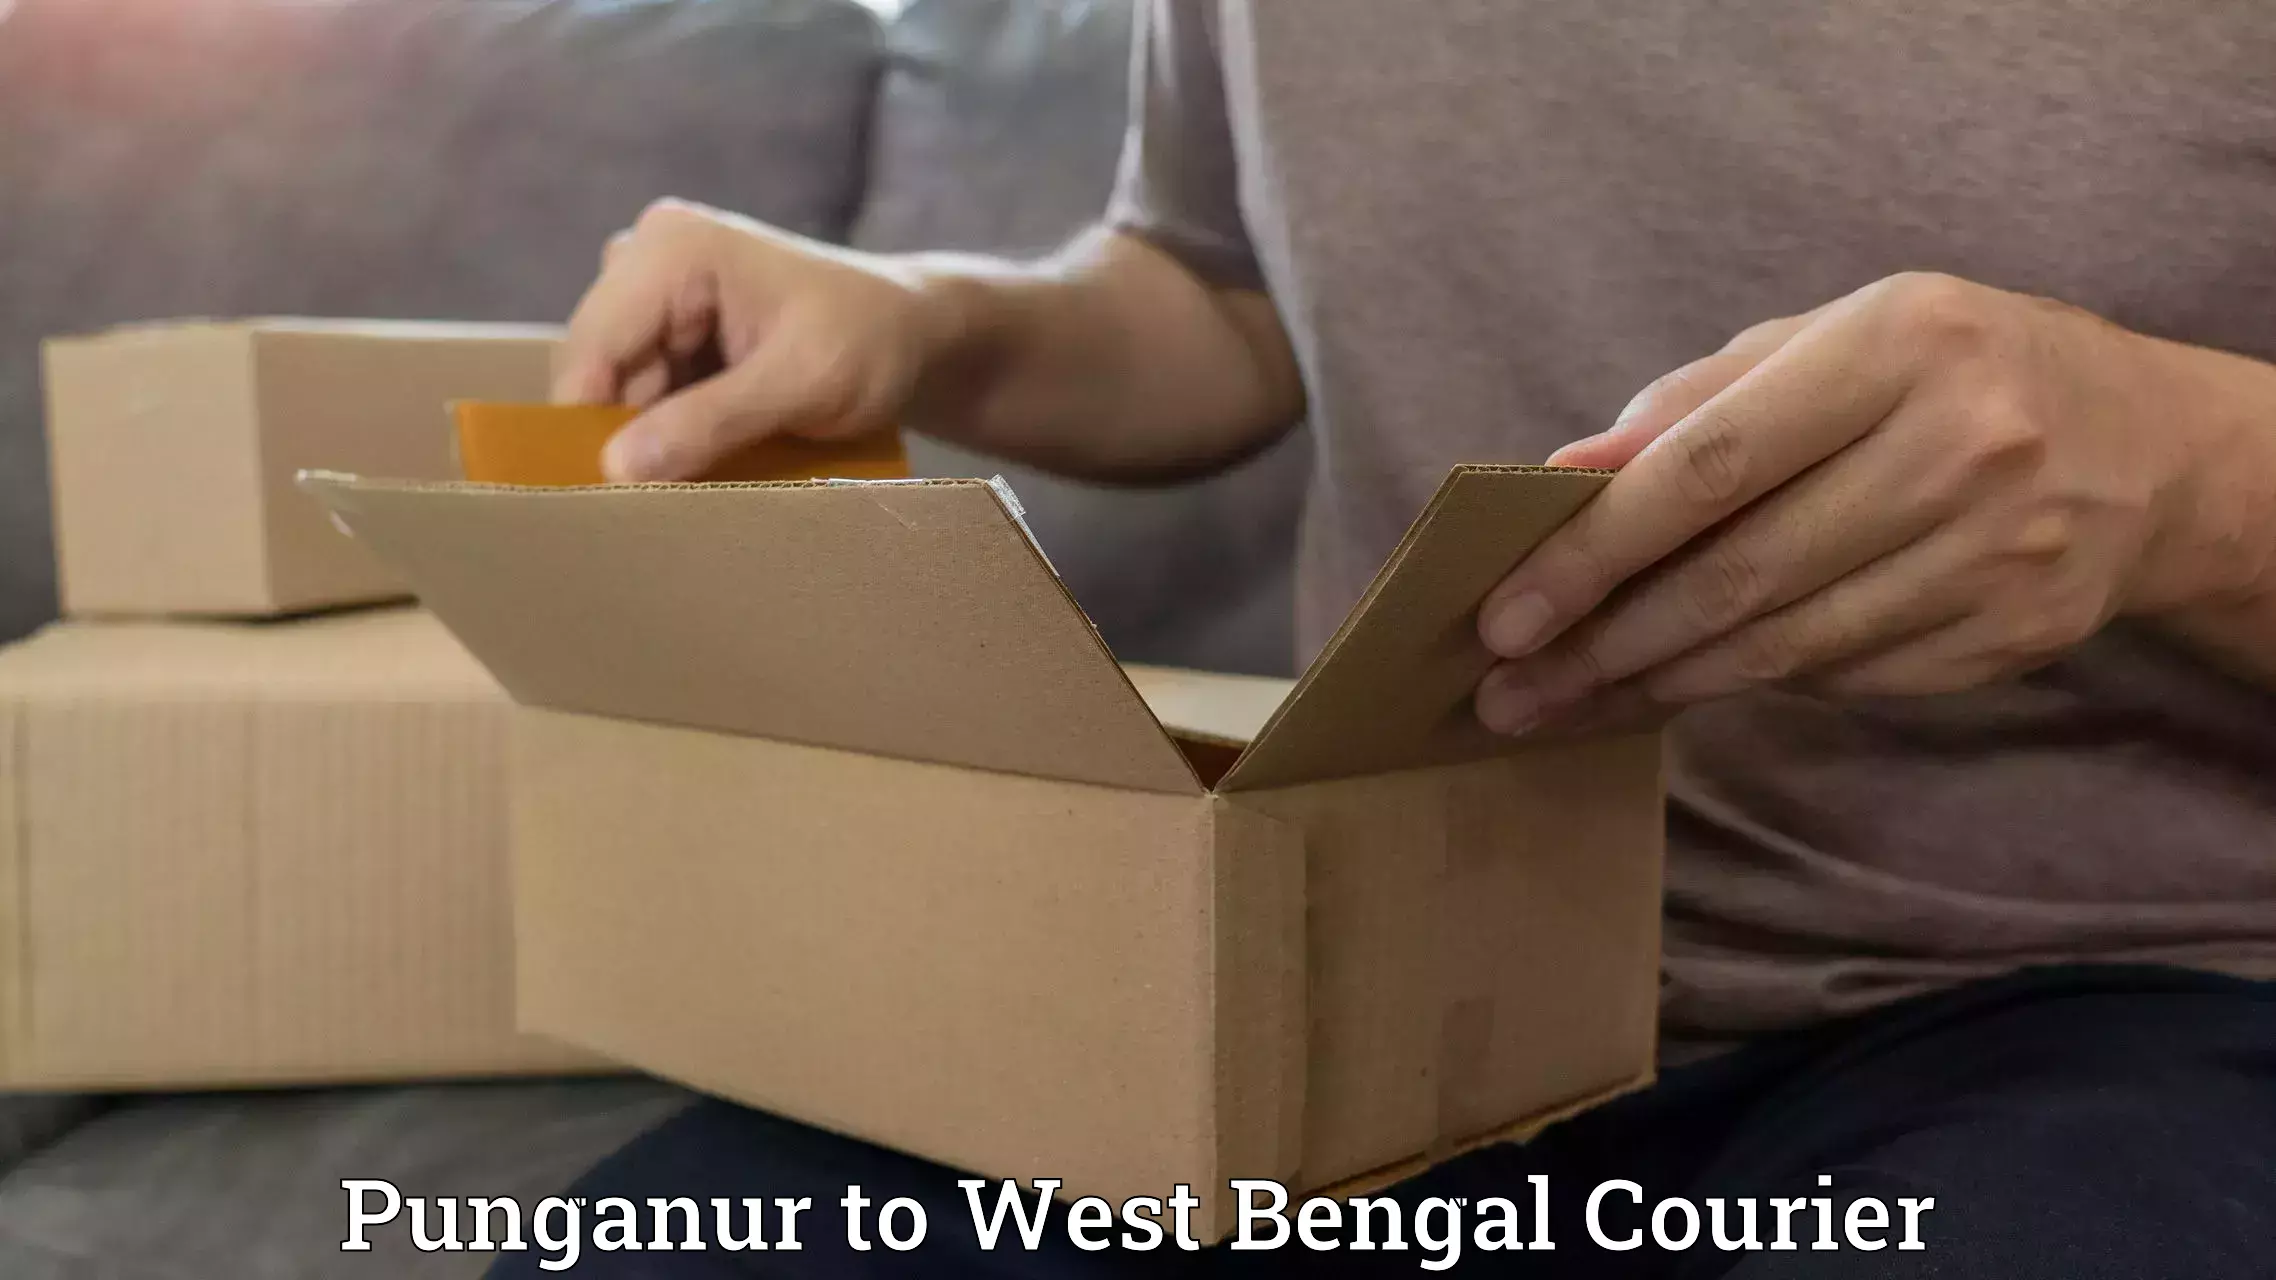 Efficient parcel service Punganur to West Bengal